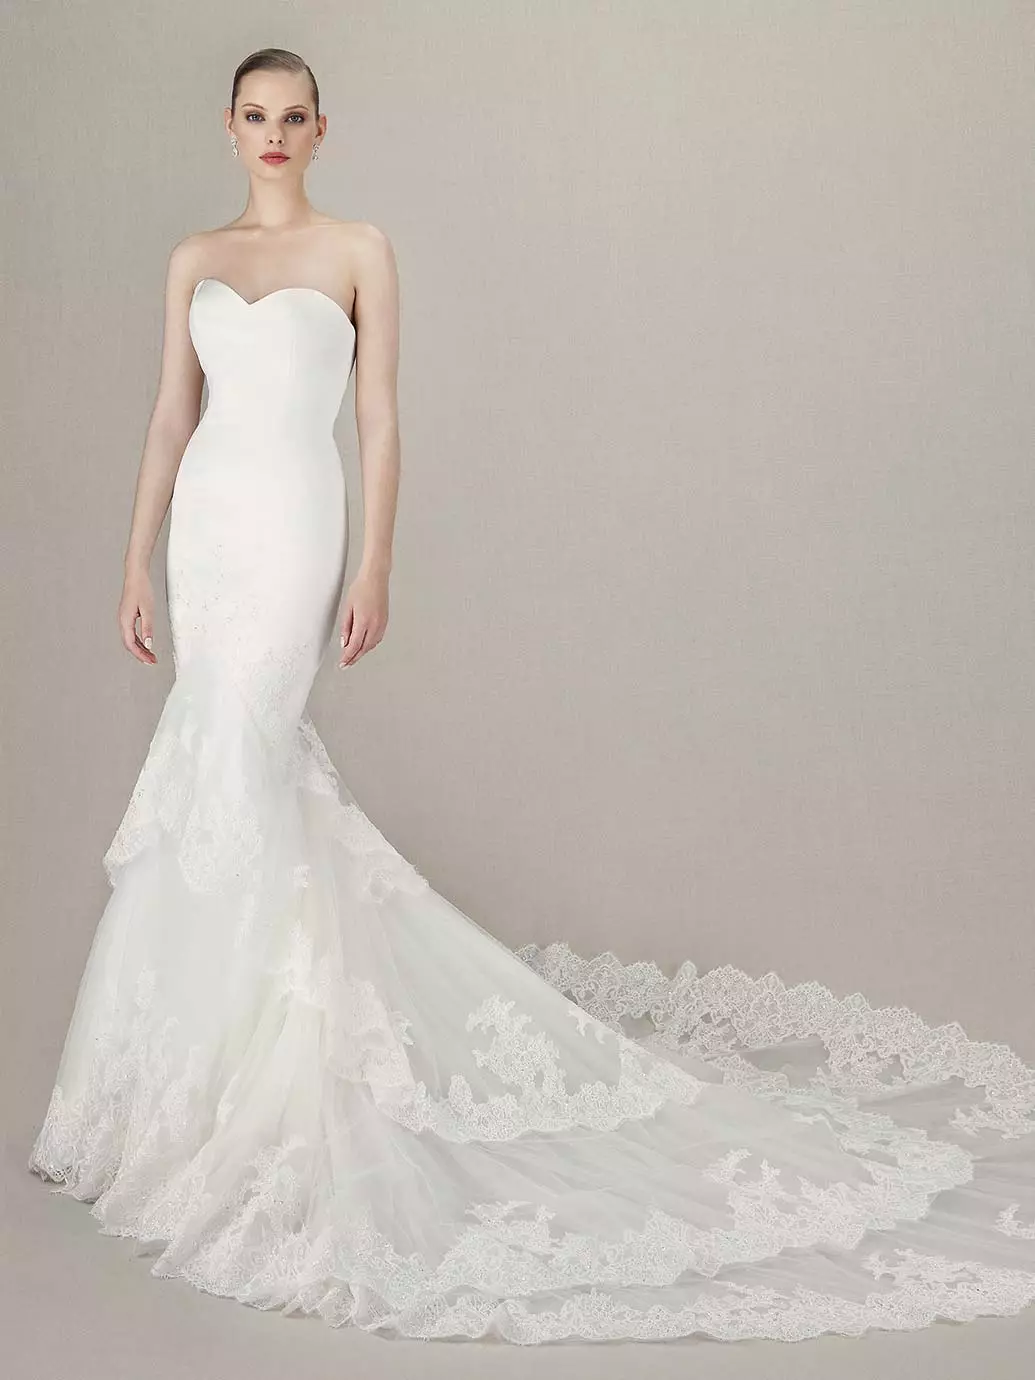 Gaun pengantin putih putri duyung